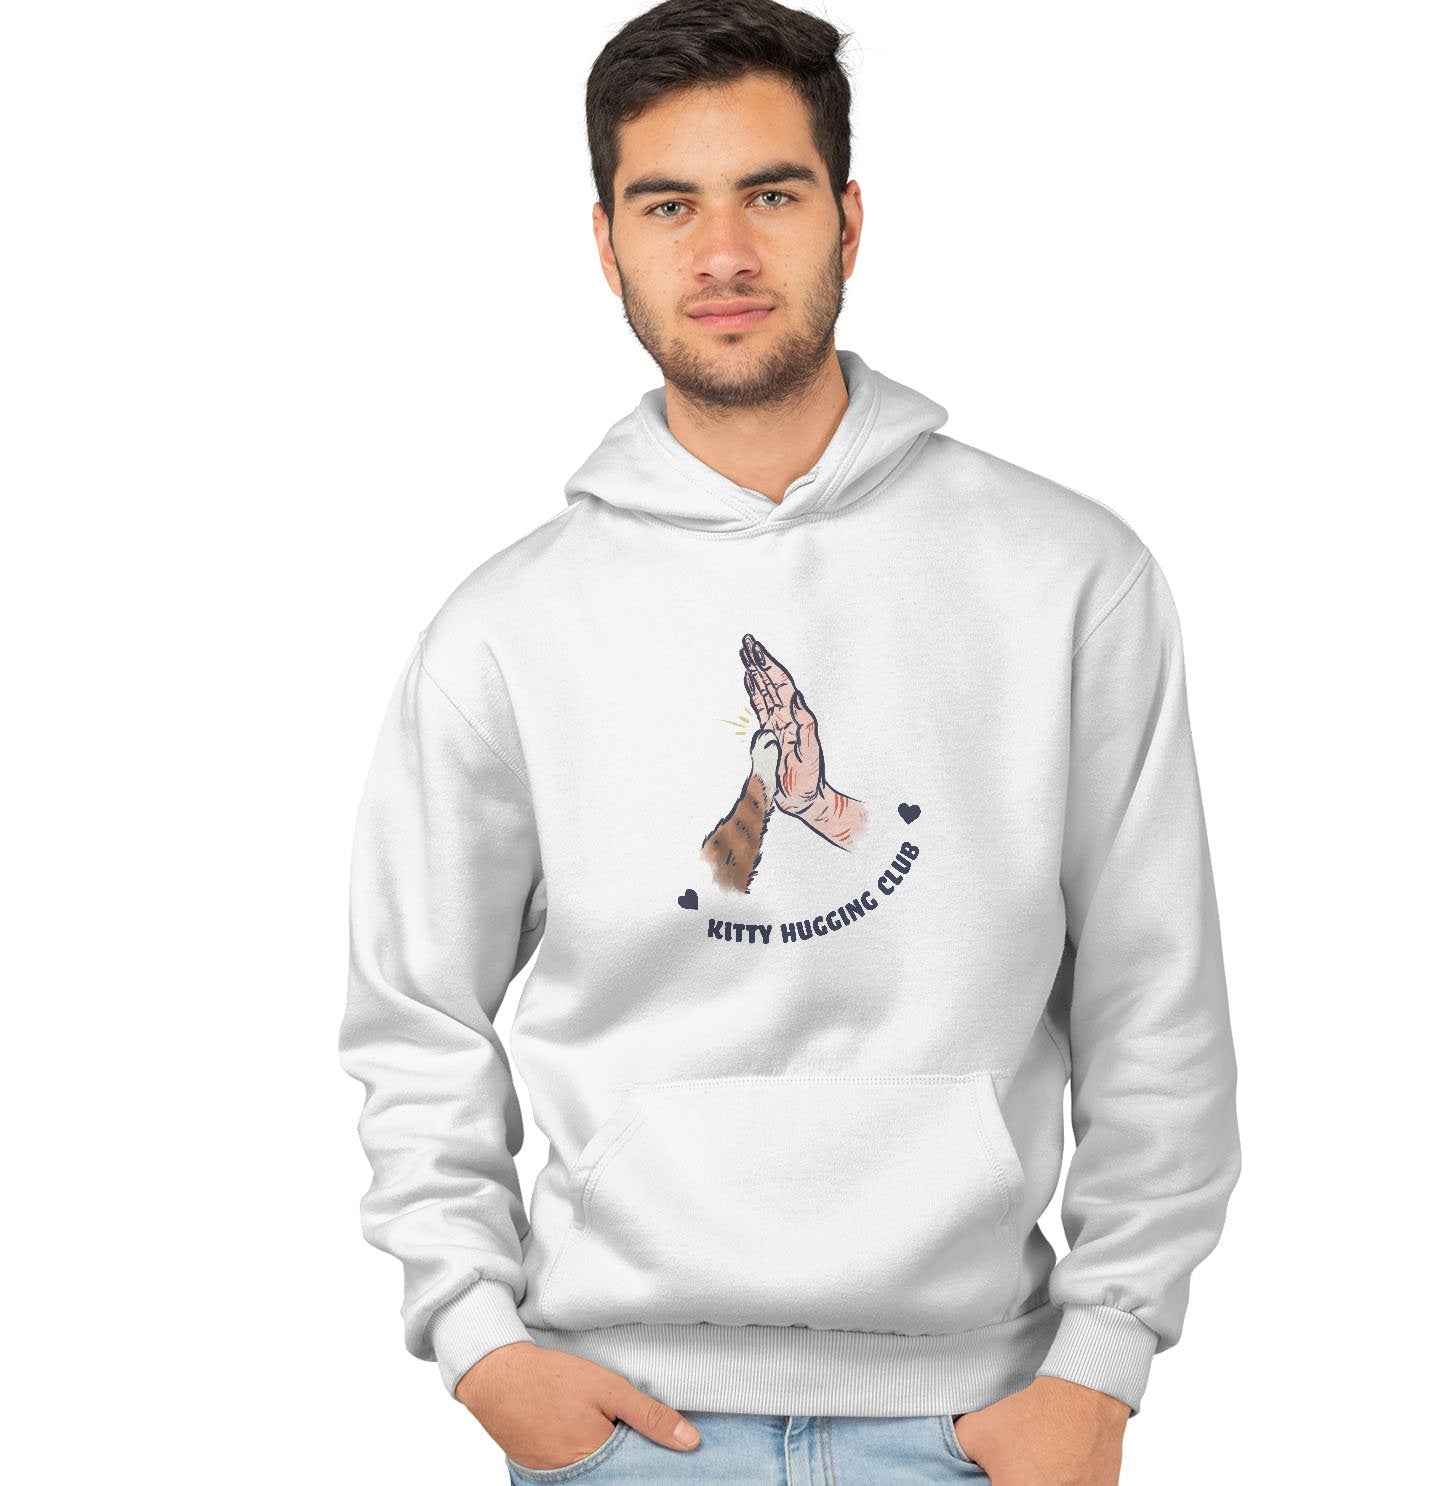 Kitty Hugging Club - Adult Unisex Hoodie Sweatshirt